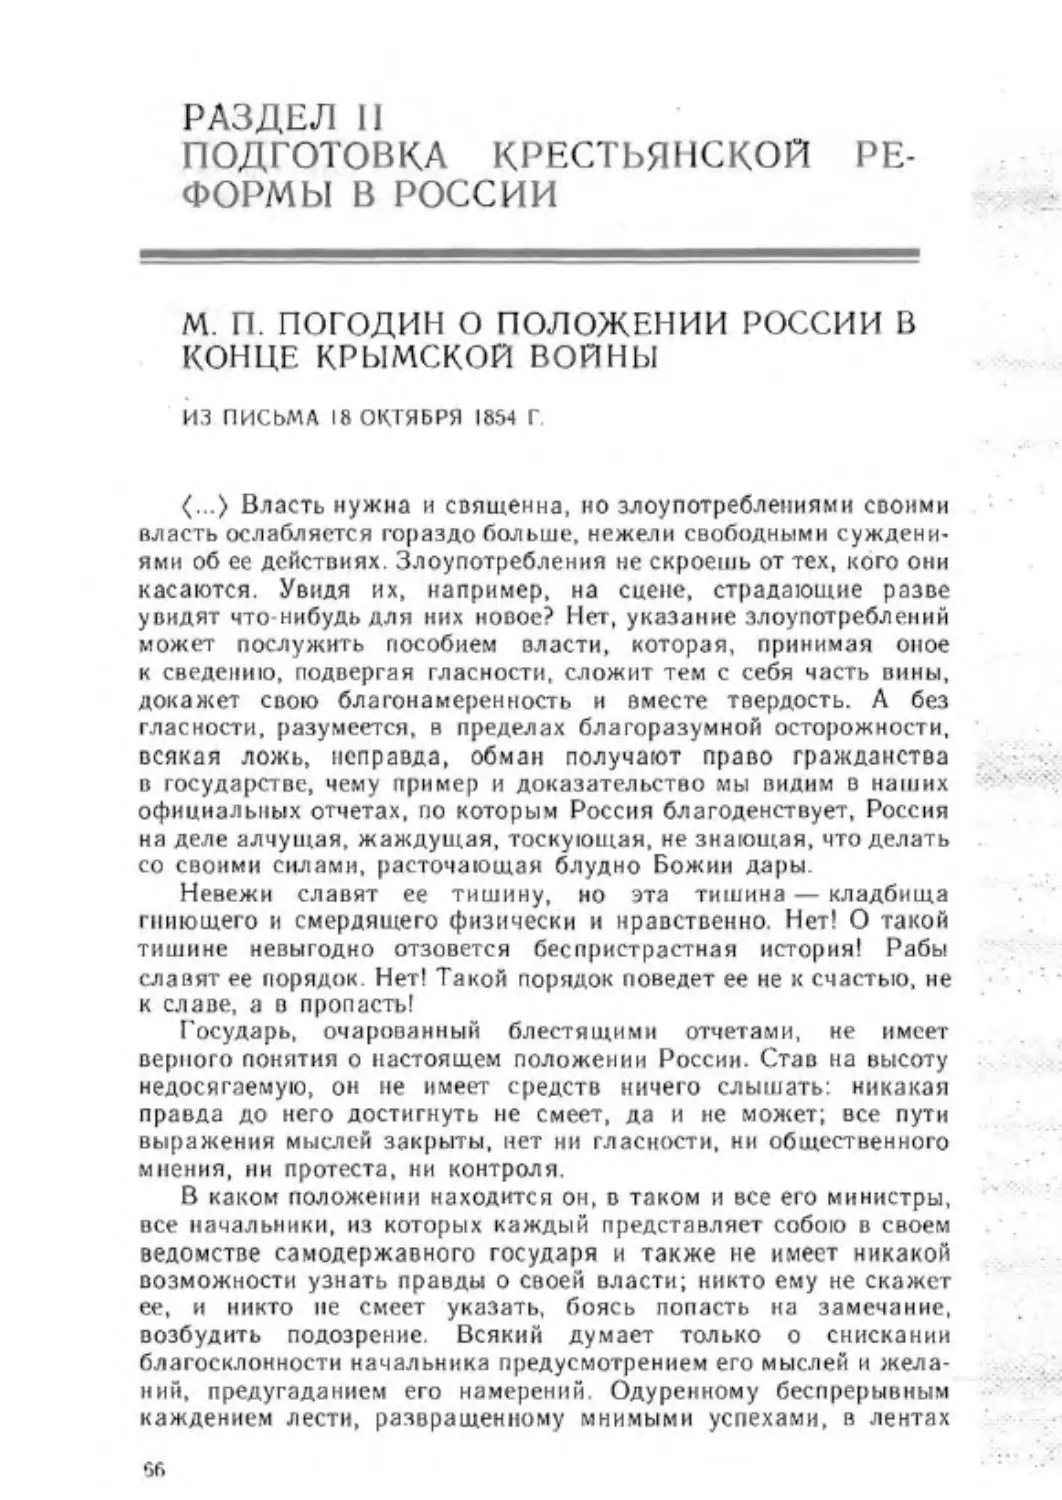 РАЗДЕЛ II. Подготовка крестьянской реформы в России